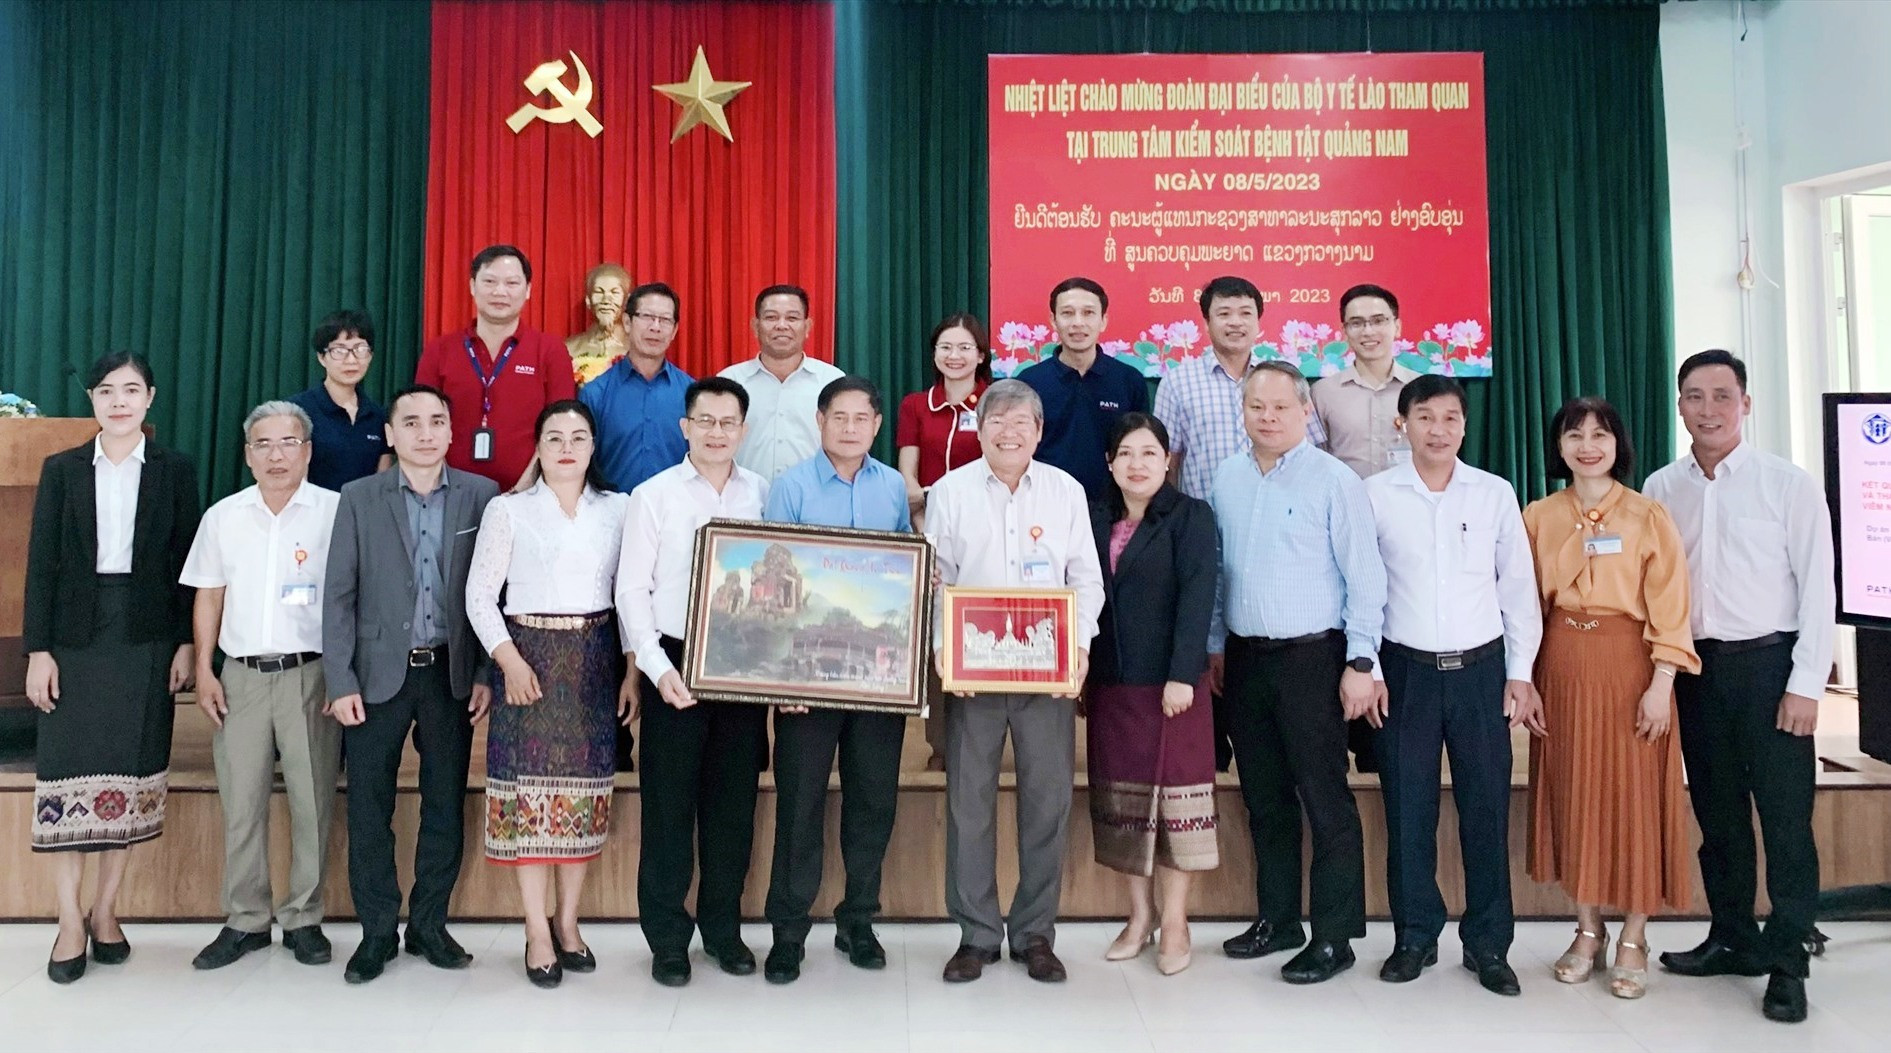 Đoàn đại biểu của Bộ Y tế Lào, CDC Quảng Nam cùng đại diện tổ chức PATH chụp ảnh lưu niệm.